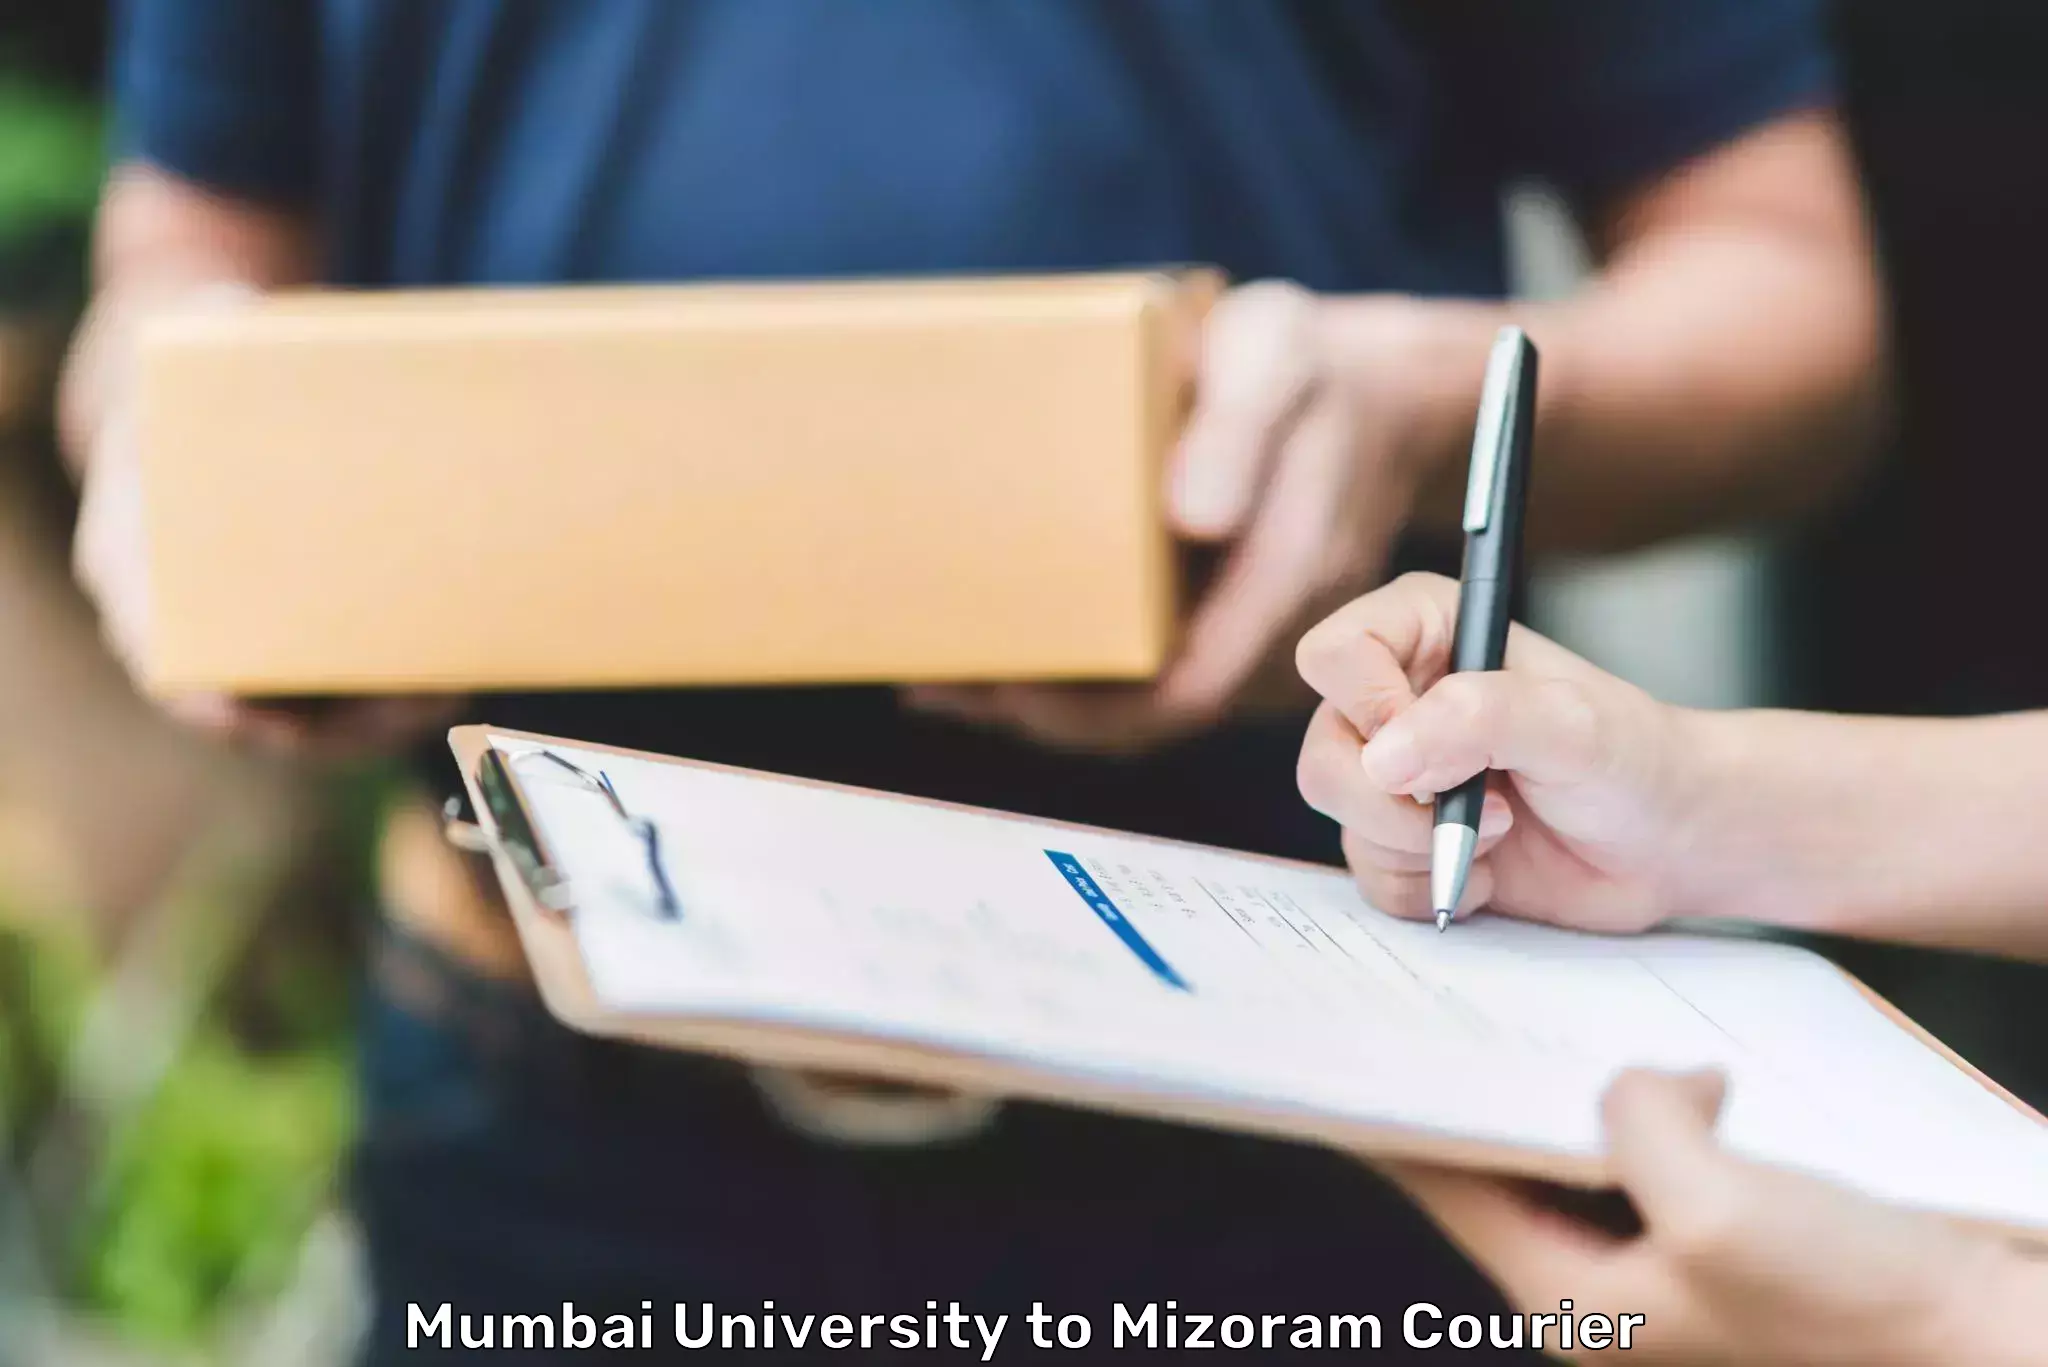 Courier service efficiency Mumbai University to Mizoram